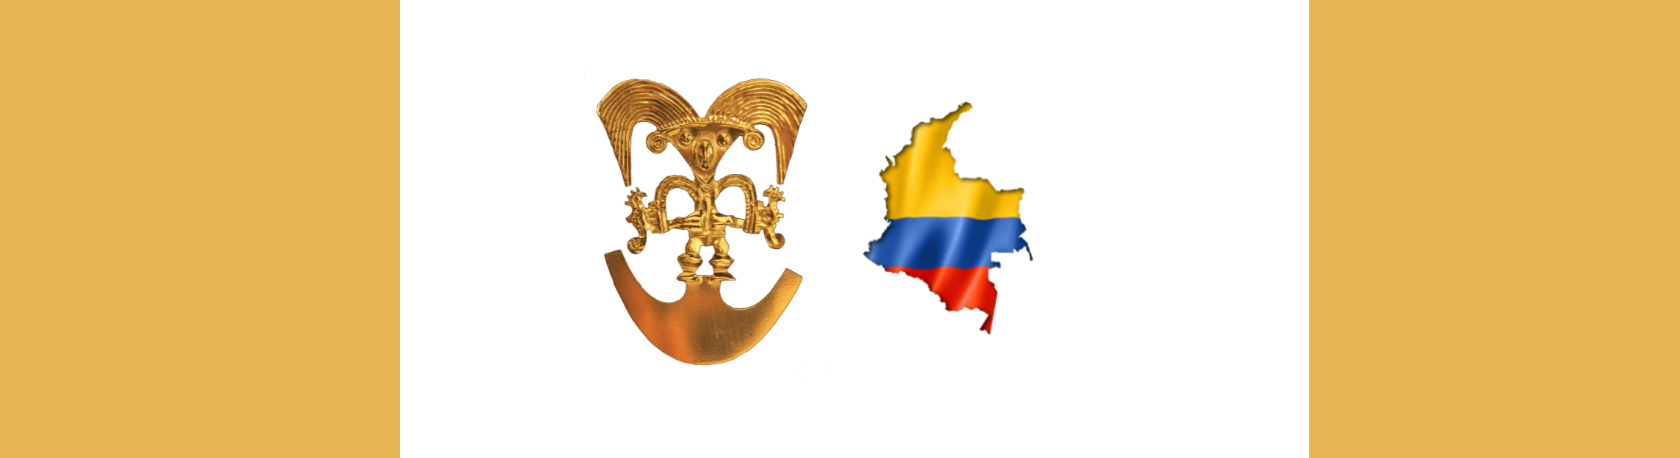 ¿Sabías que Colombia tiene un Museo del Oro? - Easy Español